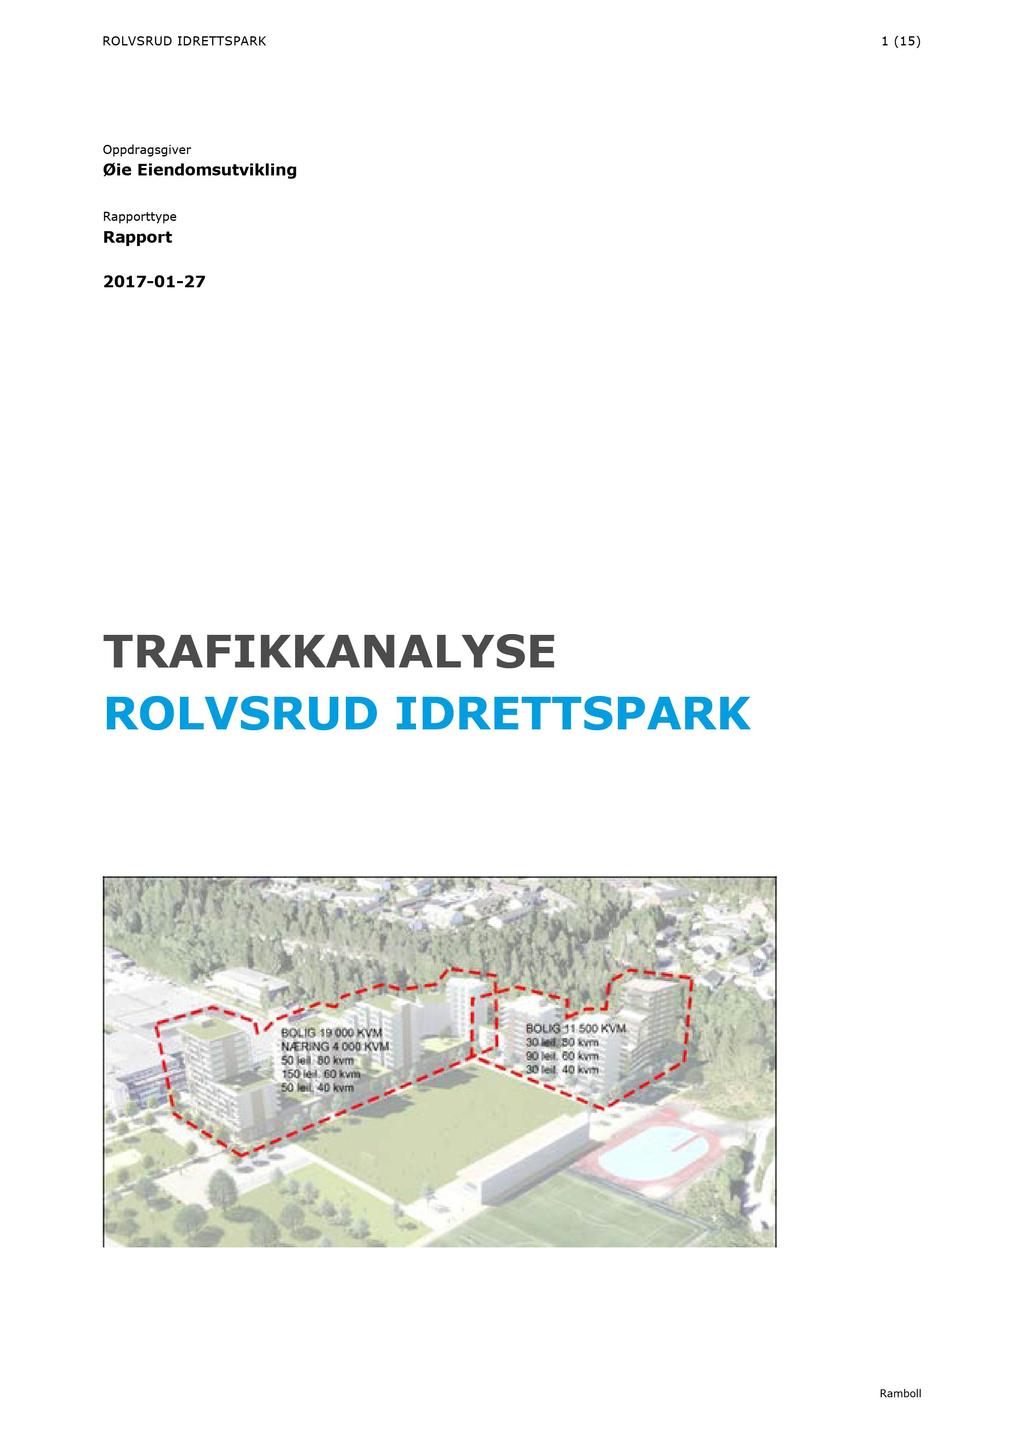 ROLVSRUD IDRETTSPARK 1(15) Oppdragsgiver Øie Eiendomsutvikling Rapporttype